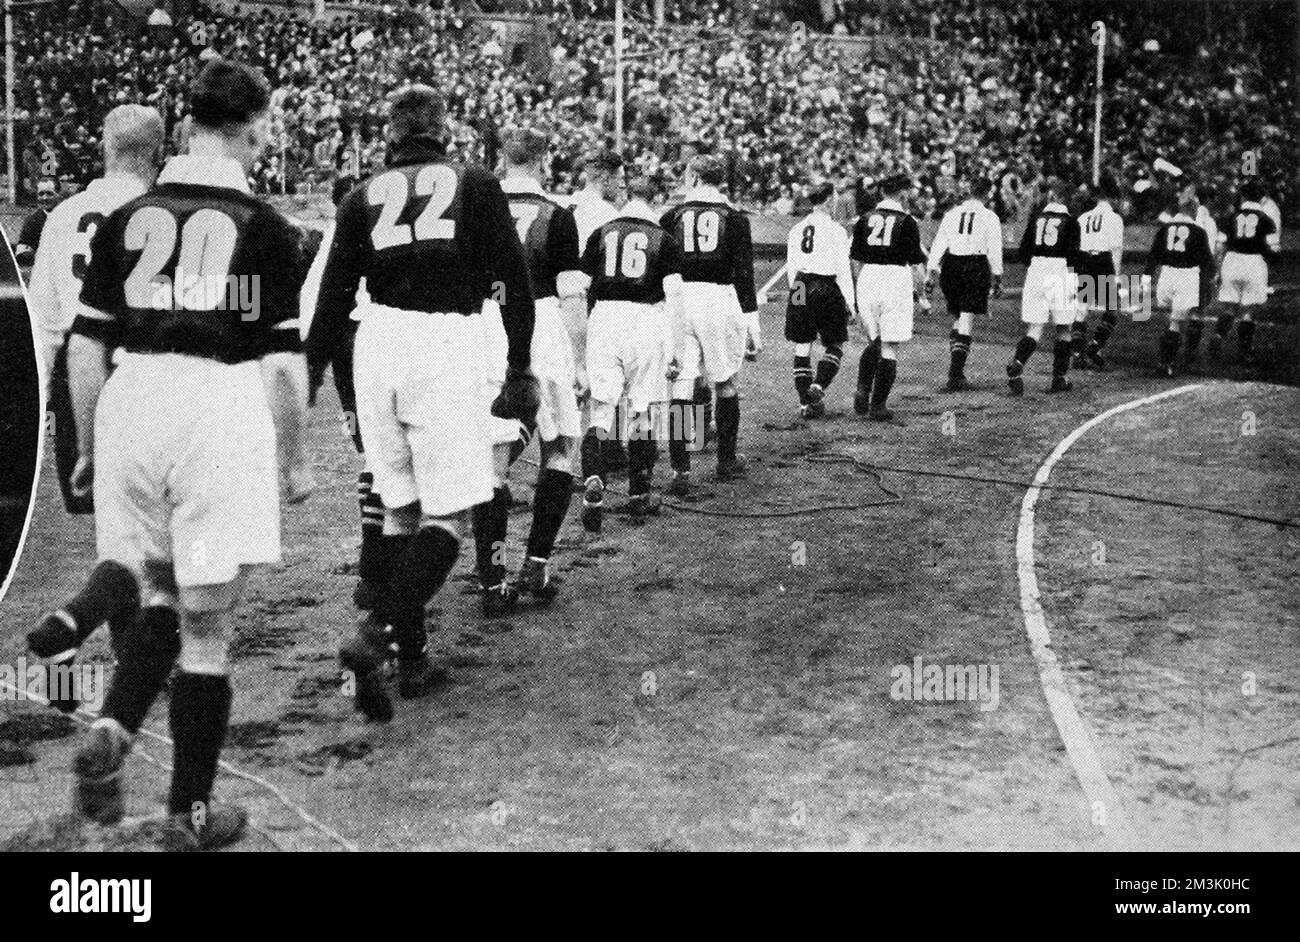 Le squadre Everton (camicie chiare) e Manchester City (camicie scure) camminano sul campo allo Stadio di Wembley, prima dell'inizio del F.A. Finale della Coppa del 1933. Everton ha vinto il gioco 1-0, grazie ad un gol di Dixie Dean. Questa è stata una delle prime occasioni in cui i calciatori indossavano numeri sul retro delle loro camicie. La ragione di questa innovazione era aiutare i commentatori radiofonici della BBC e i loro ascoltatori a seguire l'azione. Come si può vedere, Everton ha preso i numeri da 1 a 11 e Manchester City ha preso 12 a 22. Data: 1933 Foto Stock